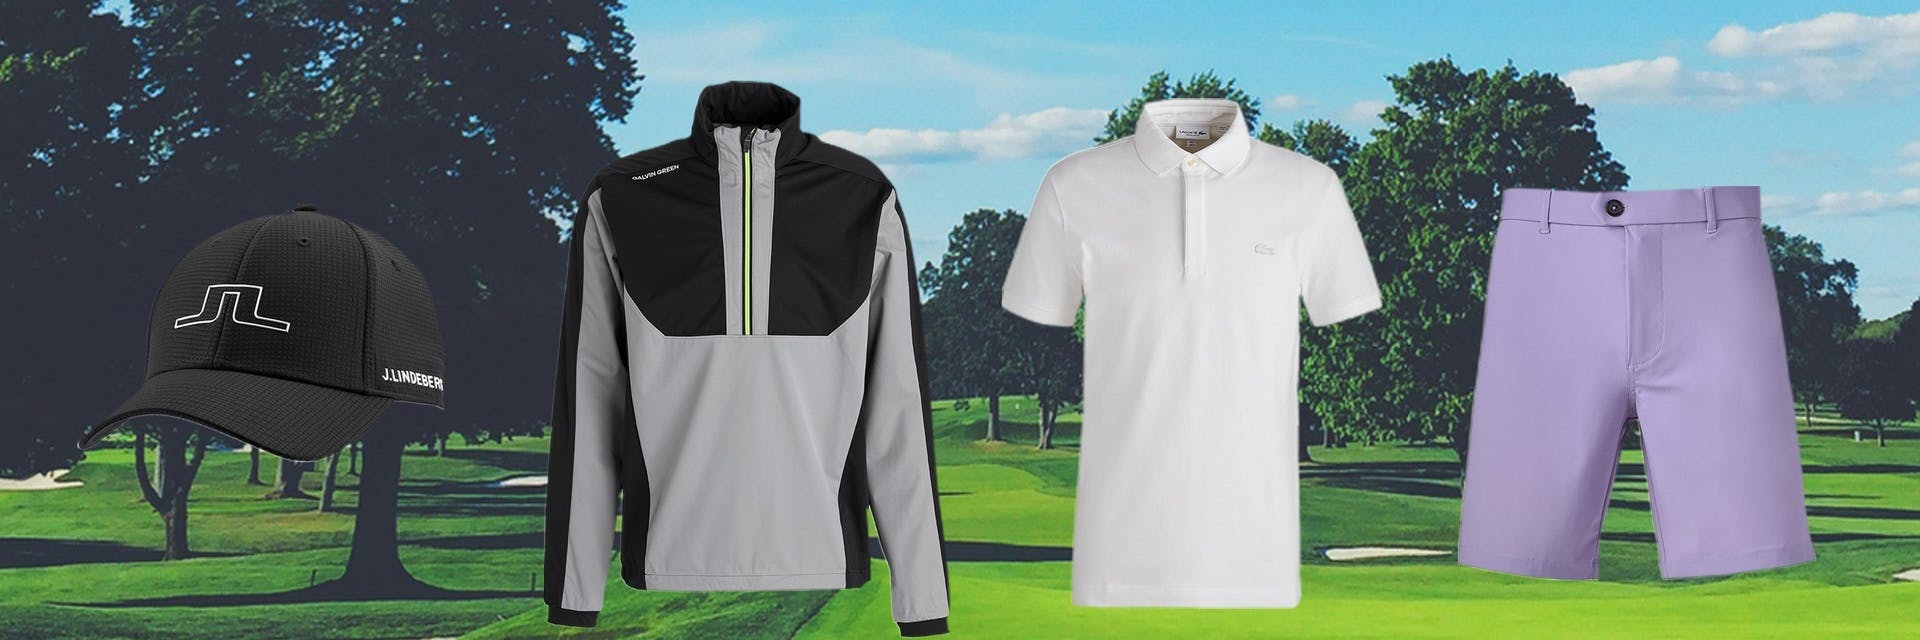 Quelle marque de golf vous convient le mieux?